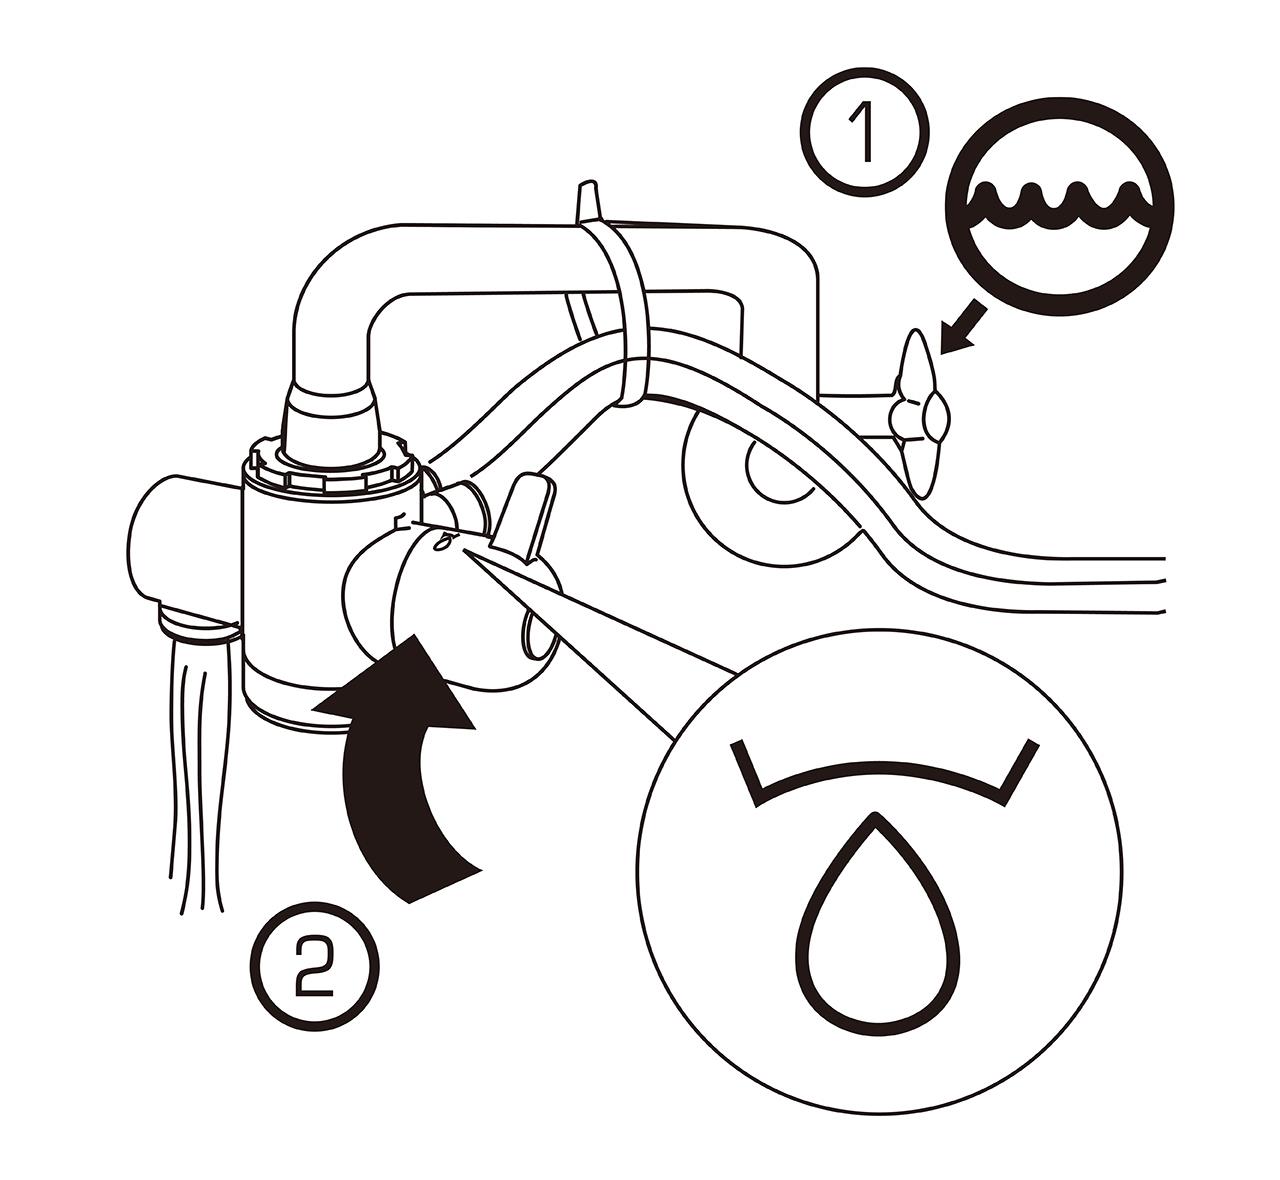 益之源淨水器分流器安裝教學-內螺紋水龍頭 🔹檢查漏水  1. 打開冷水水龍頭1️⃣將選擇鈕轉至淨水的位置2️⃣。